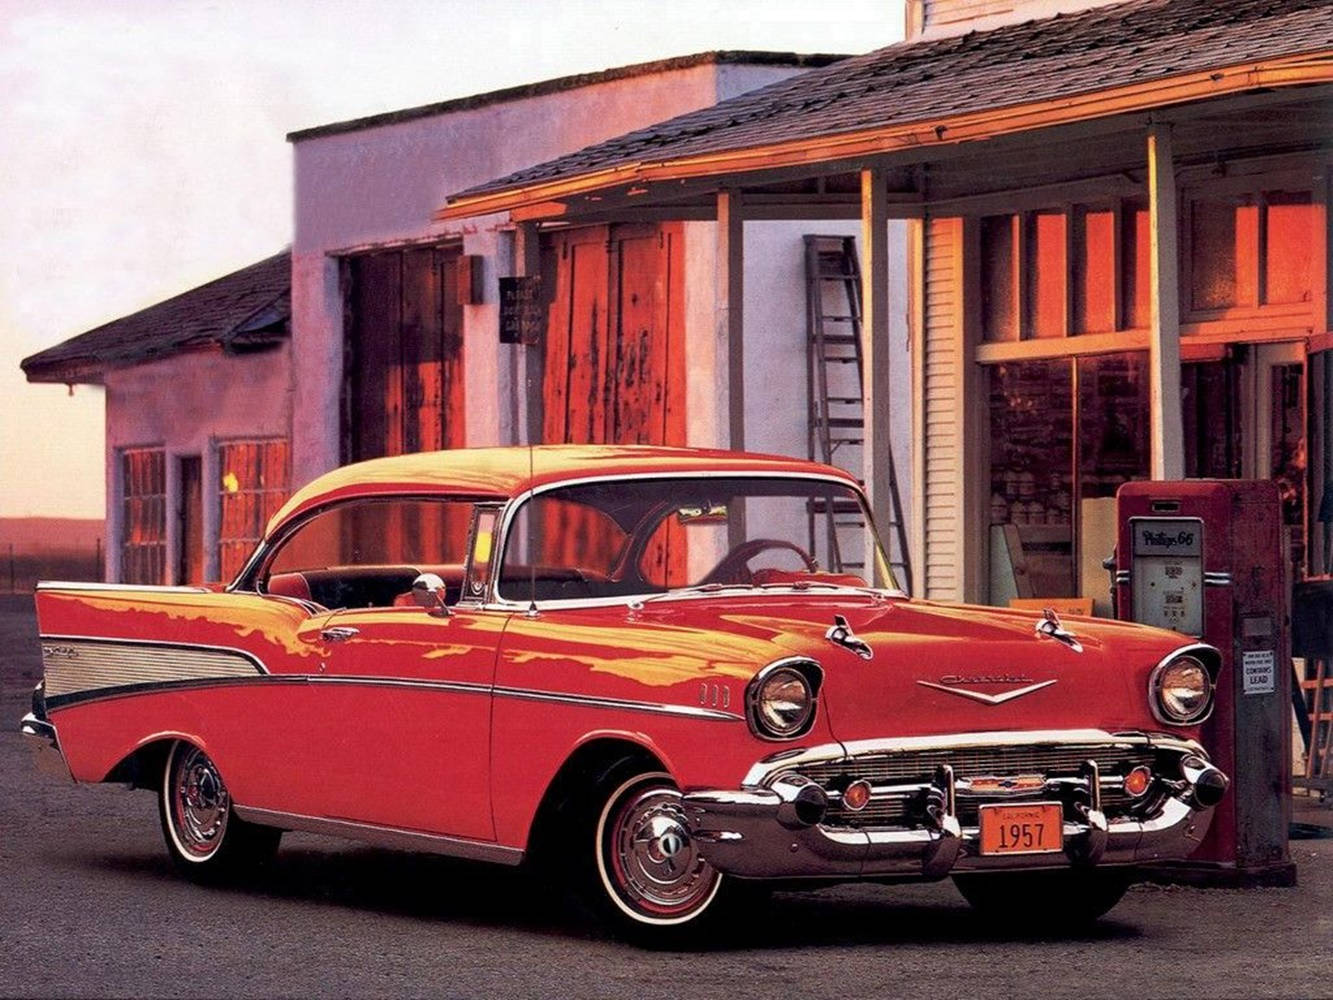 1959 Chevrolet Bel Air Classic Car Wallpaper